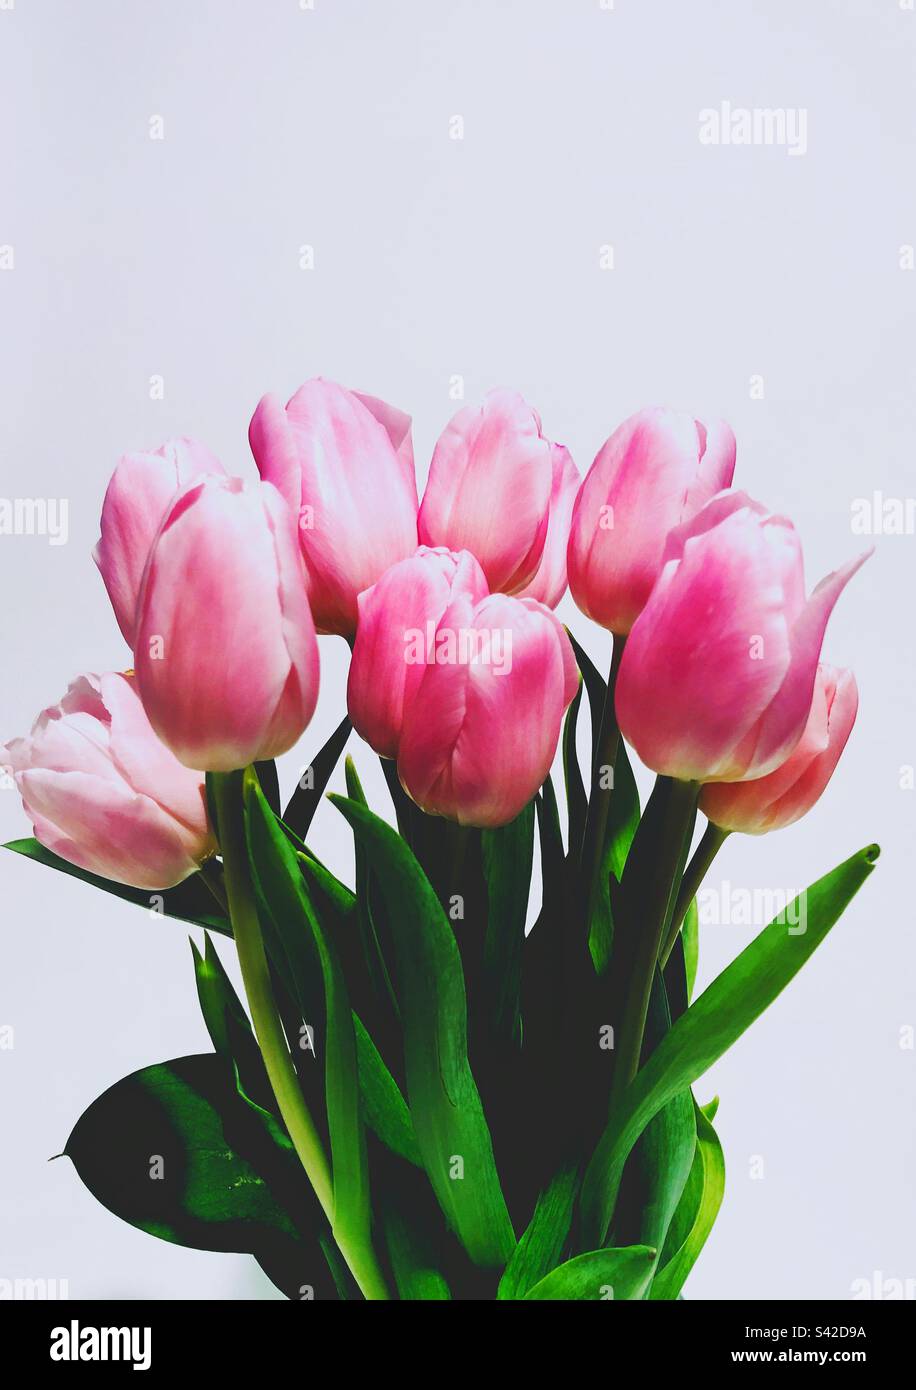 Rosa fiori di tulipani in fiore Foto Stock